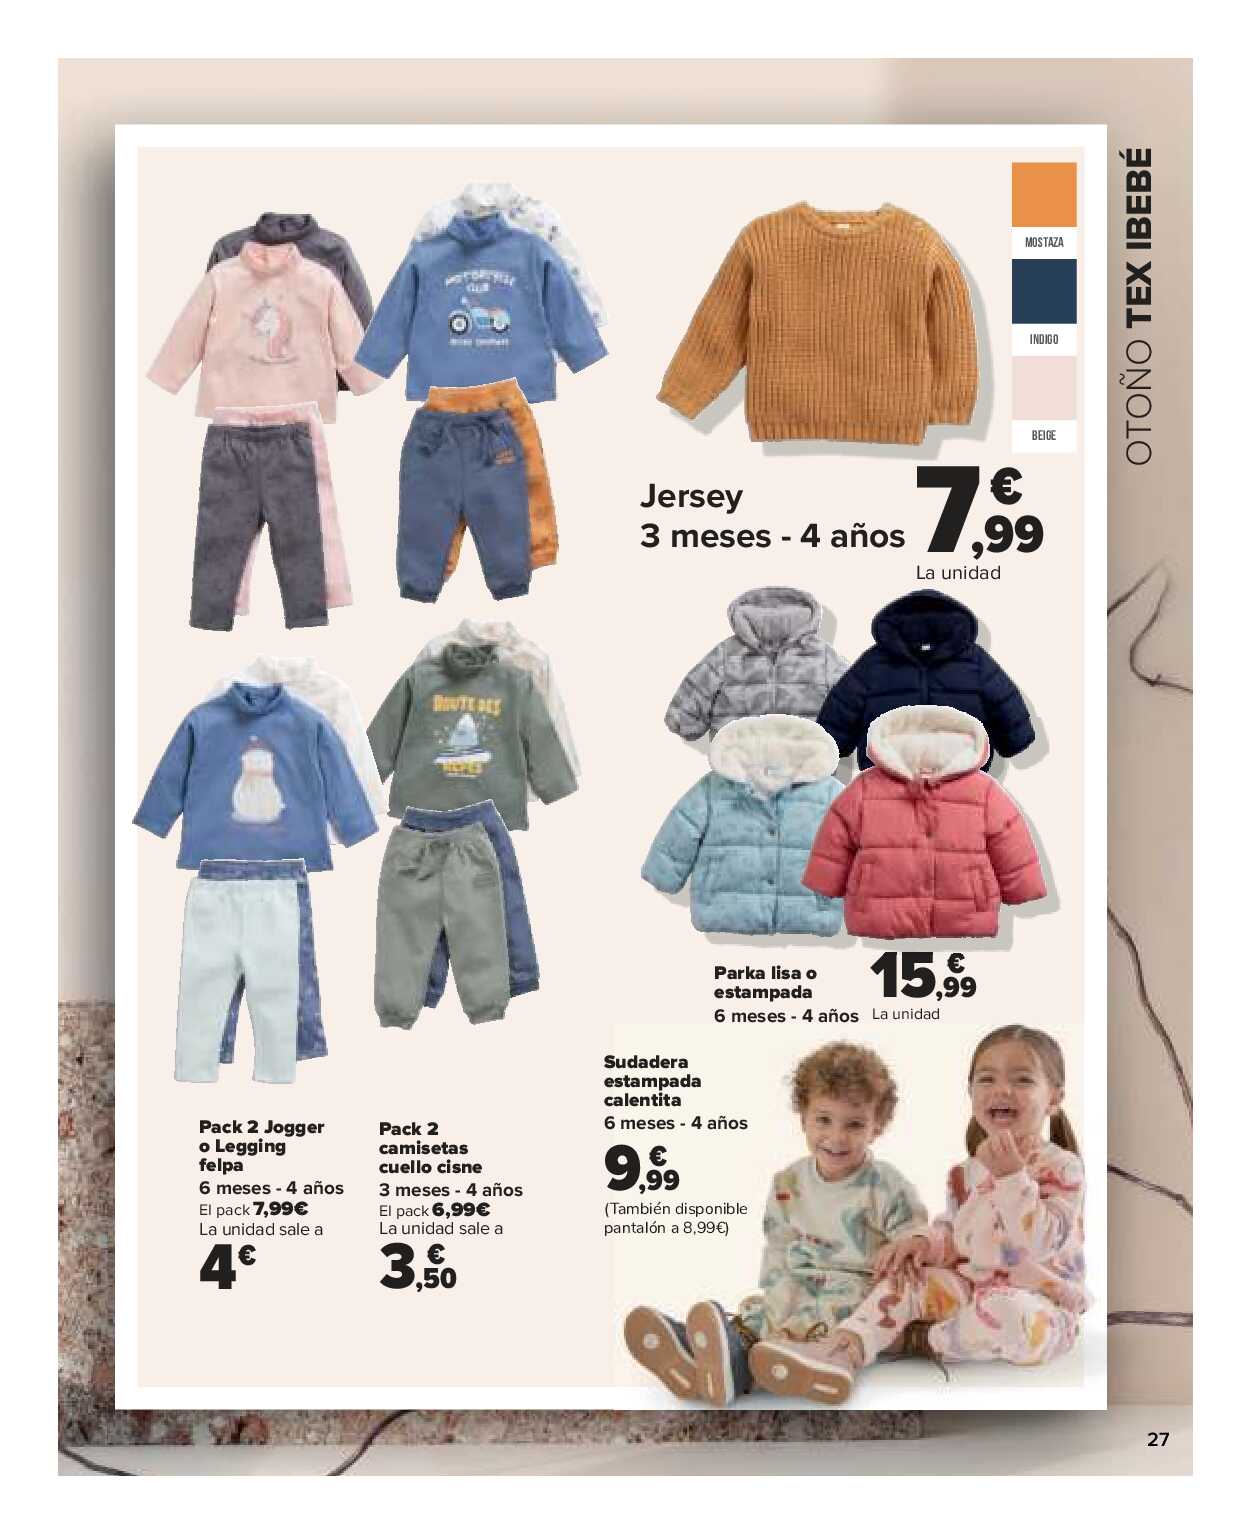 Textil mujer, hombre y niños Carrefour. Página 27